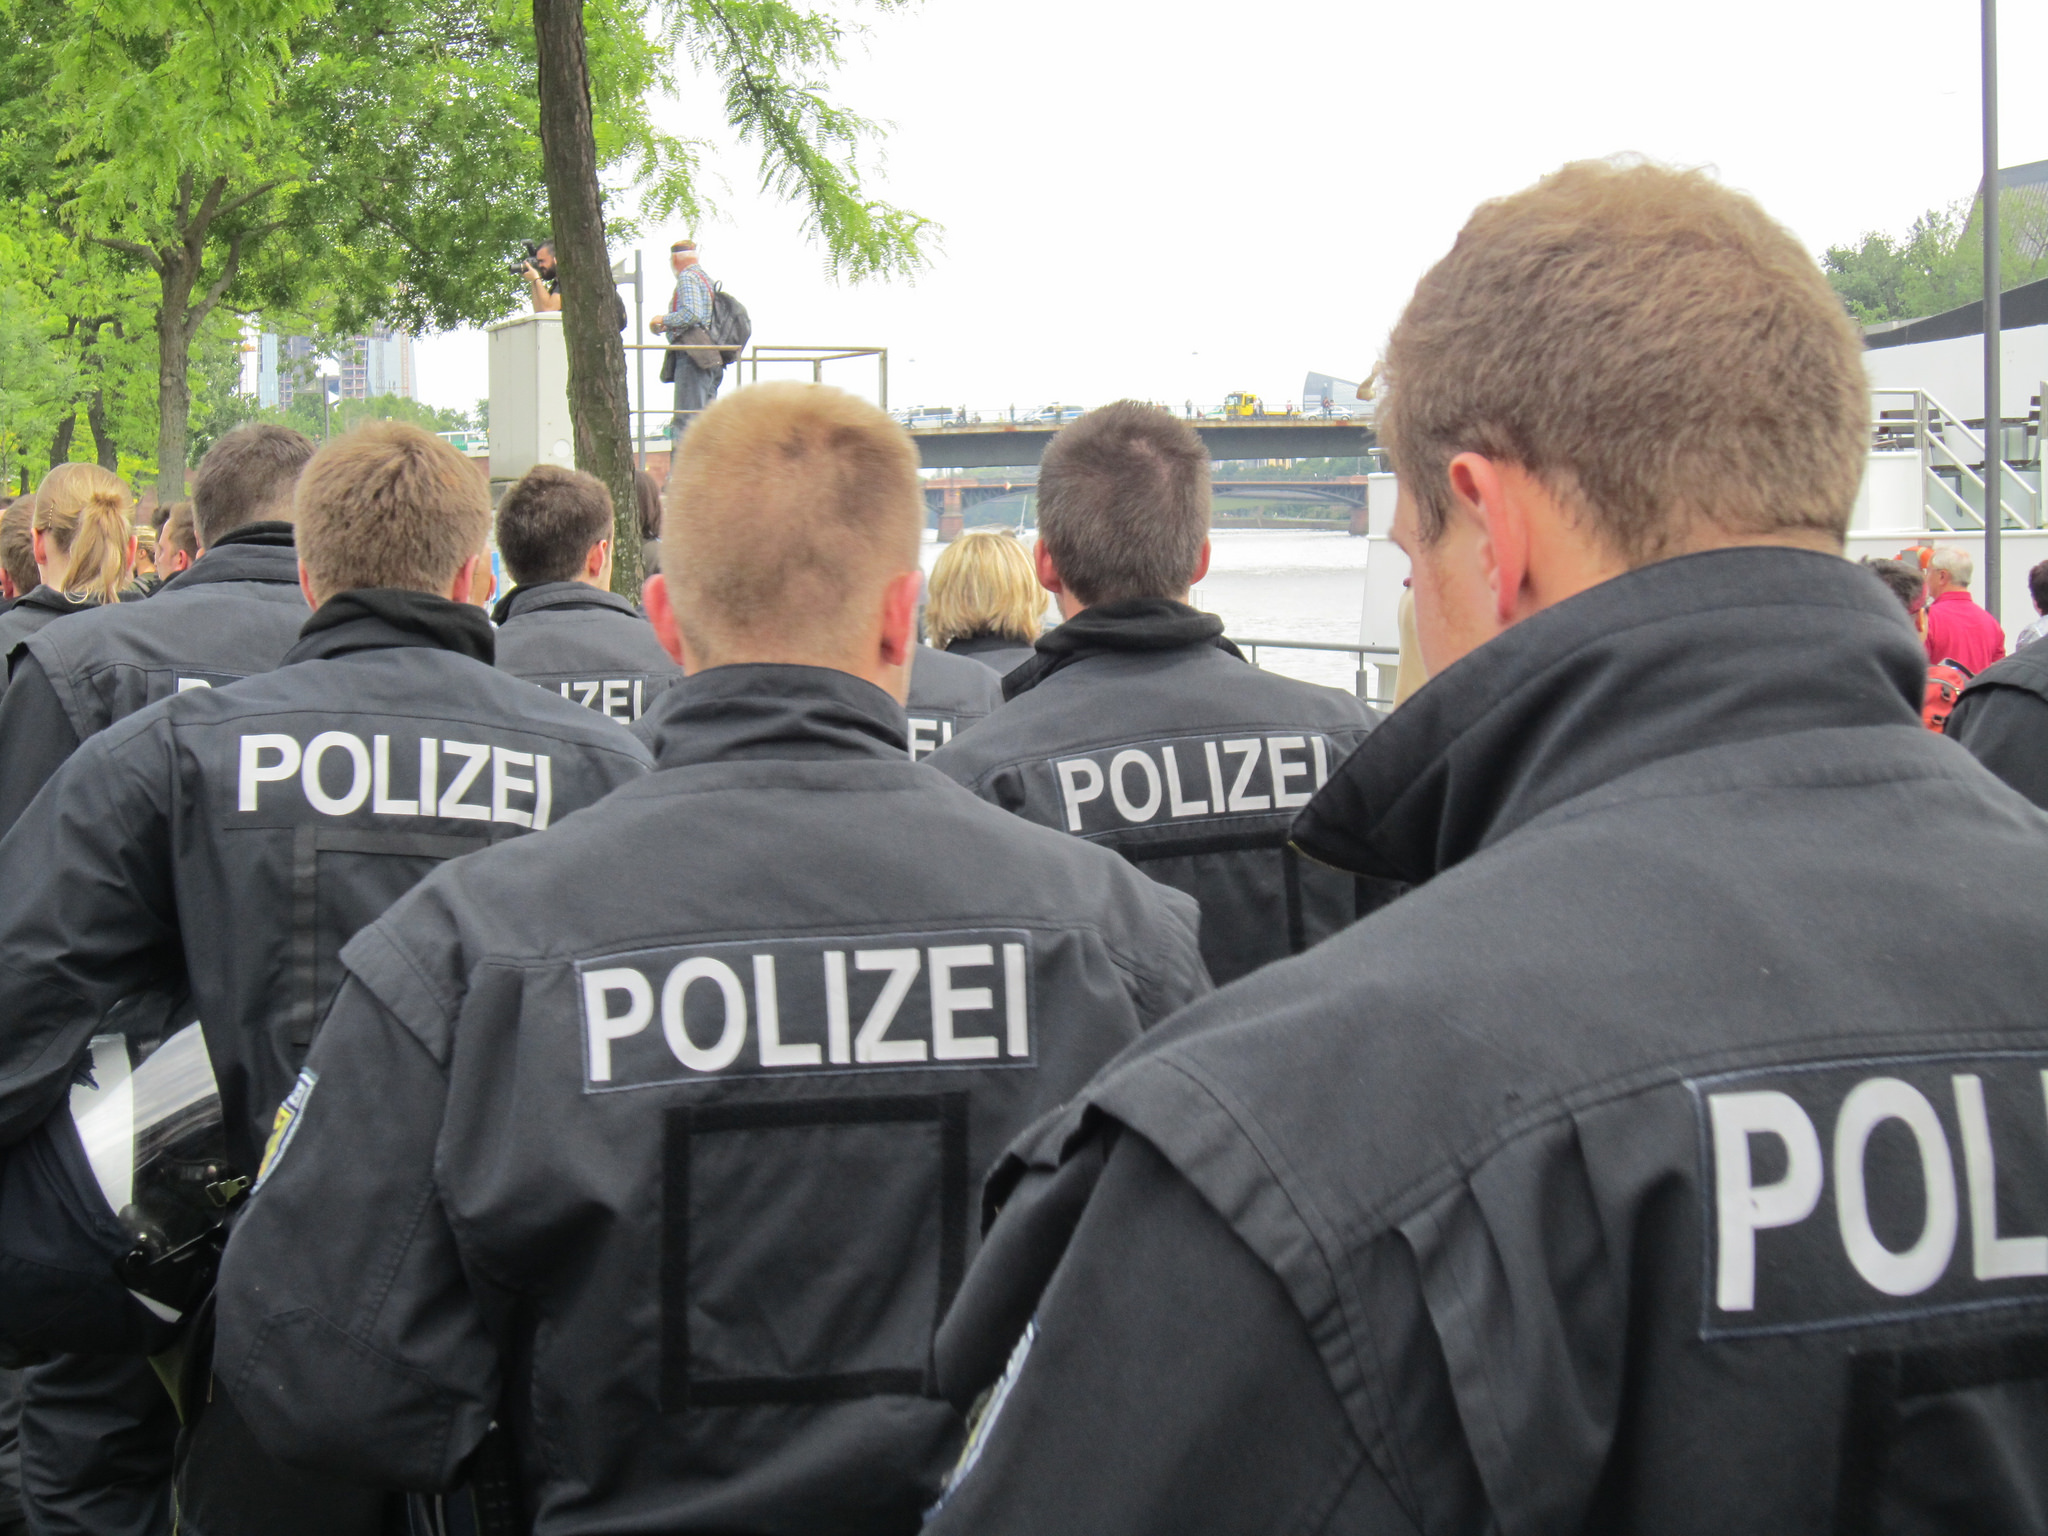 Γερμανία: Εντοπίστηκε σημαία του Isis στο σημείο της επίθεσης κατά επιβατών τρένου